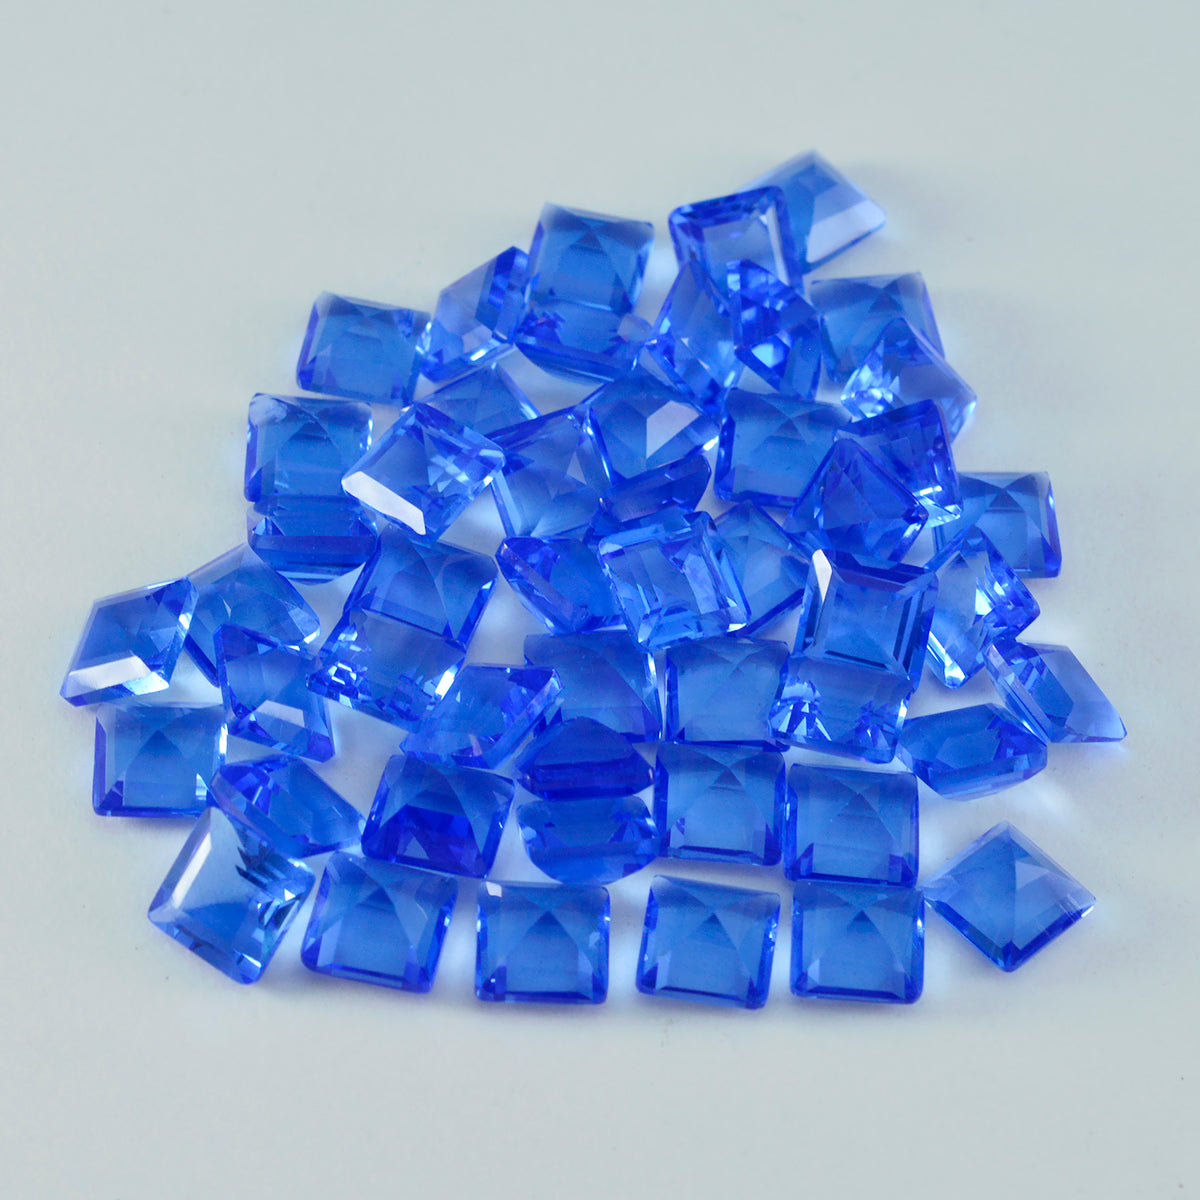 riyogems 1 шт. синий сапфир cz ограненный 7x7 мм квадратной формы красивые качественные драгоценные камни